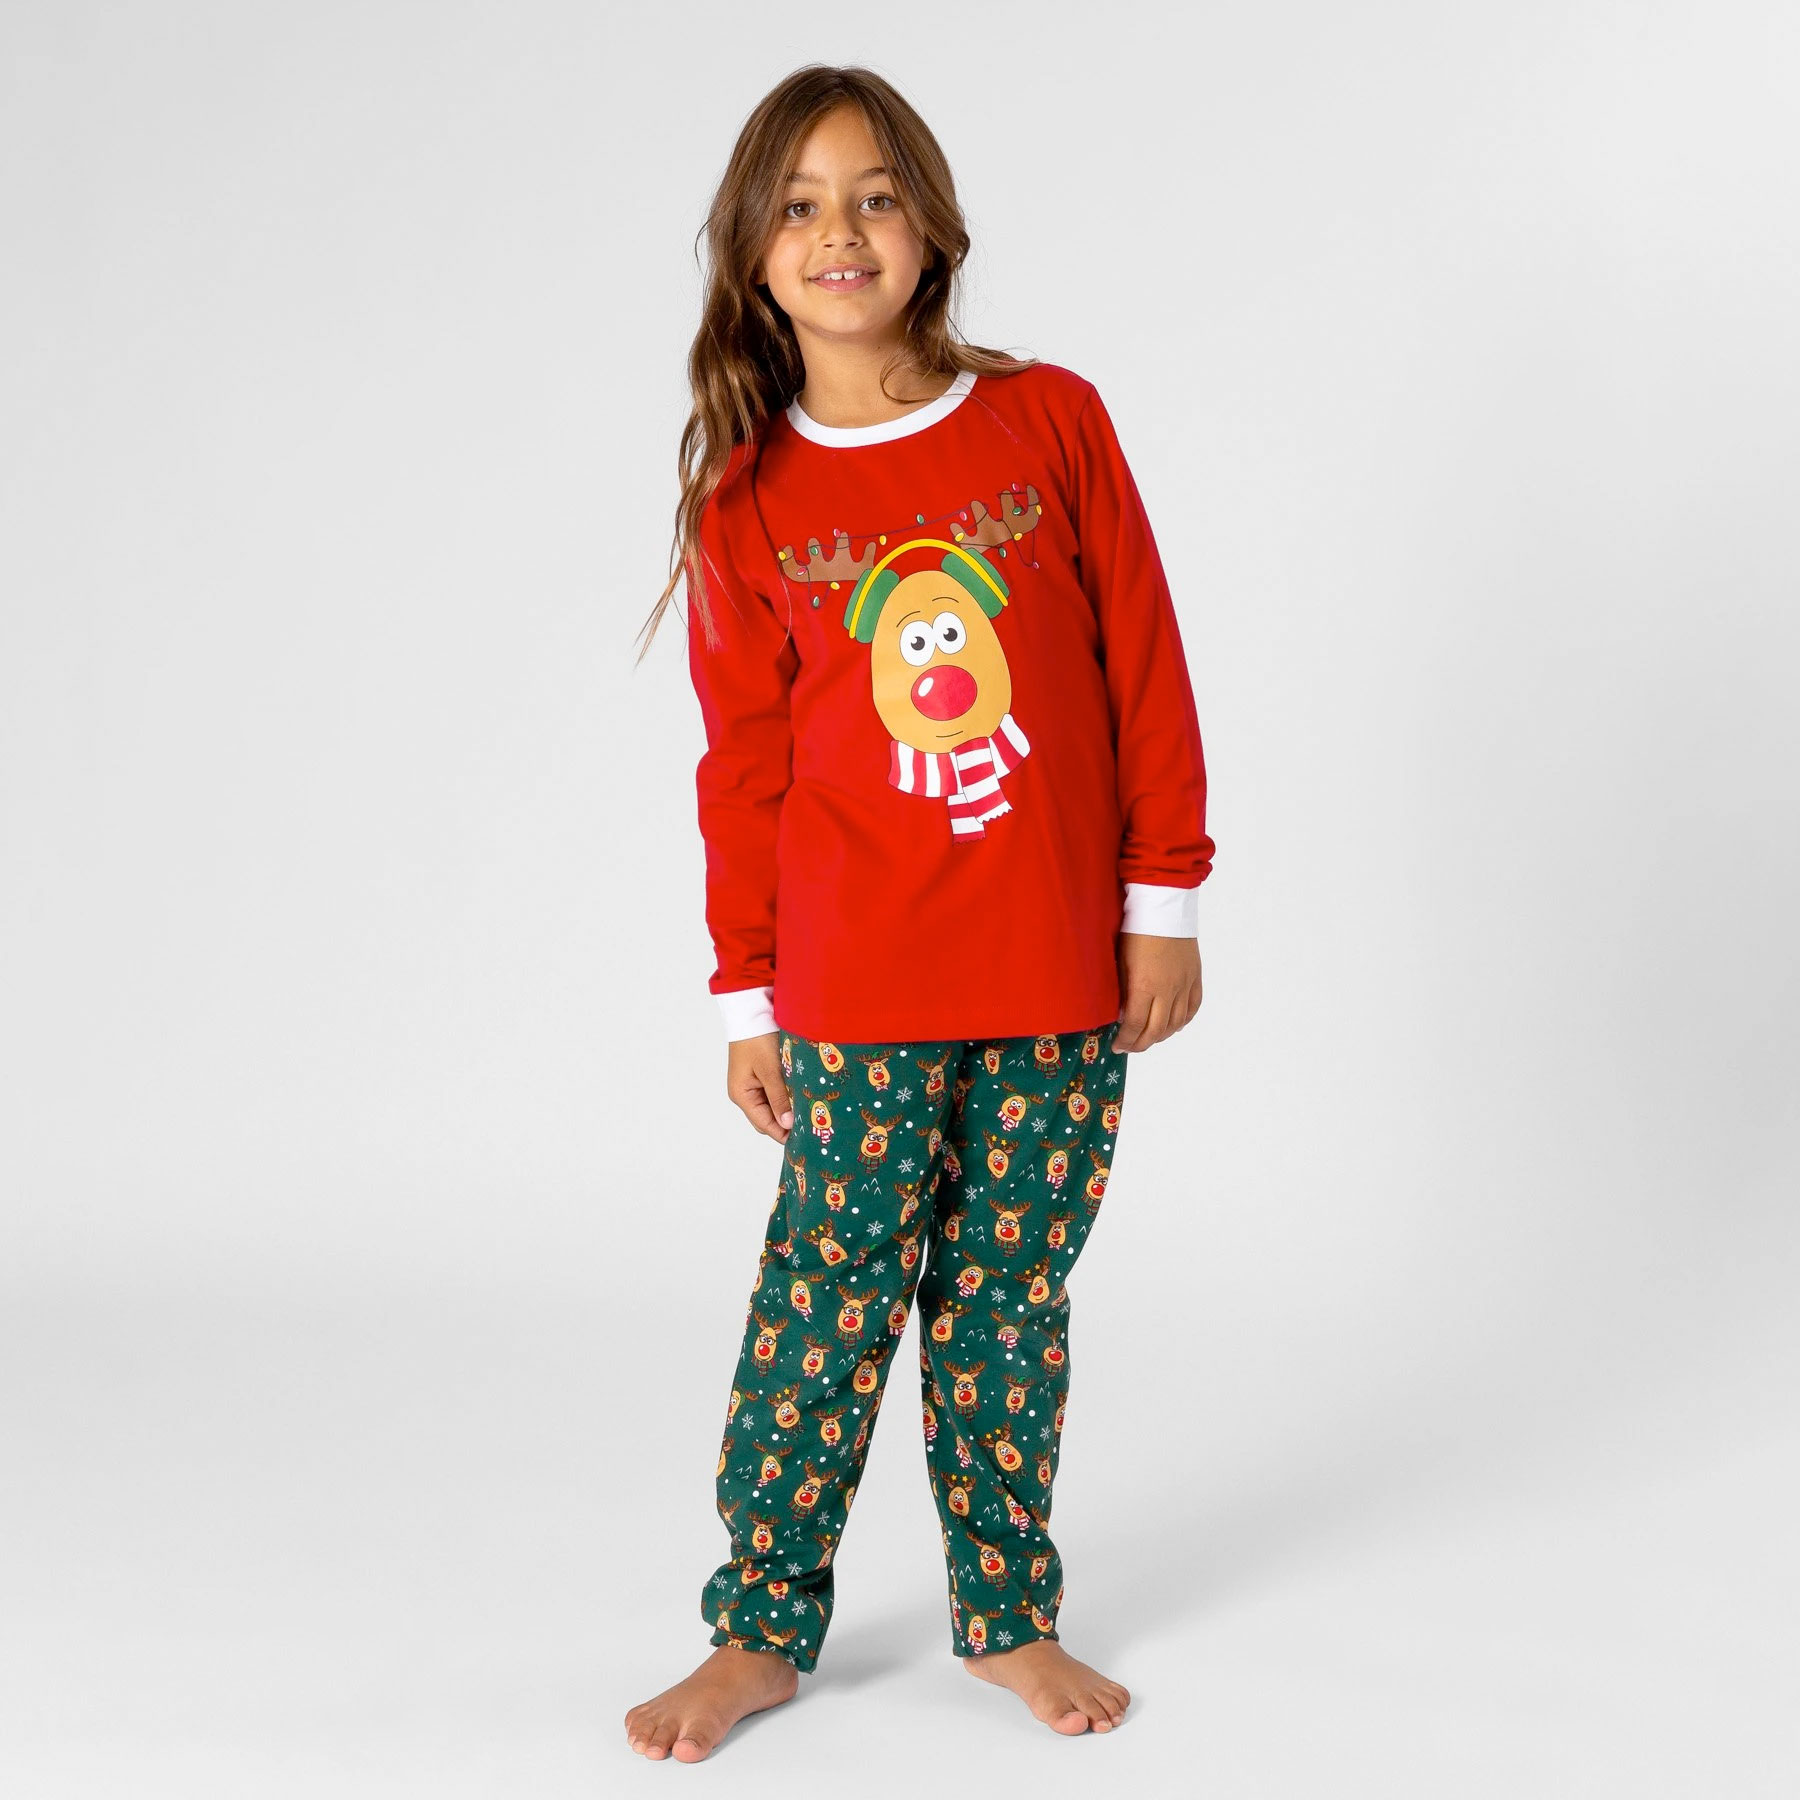 Kleding Unisex kinderkleding Pyjamas & Badjassen Pyjama Rendier kerst pyjama gepersonaliseerd // Gestreepte katoenen pyjama met naam // Kerstavond pjs kinderen volwassenen familie // Baby eerste kerst 